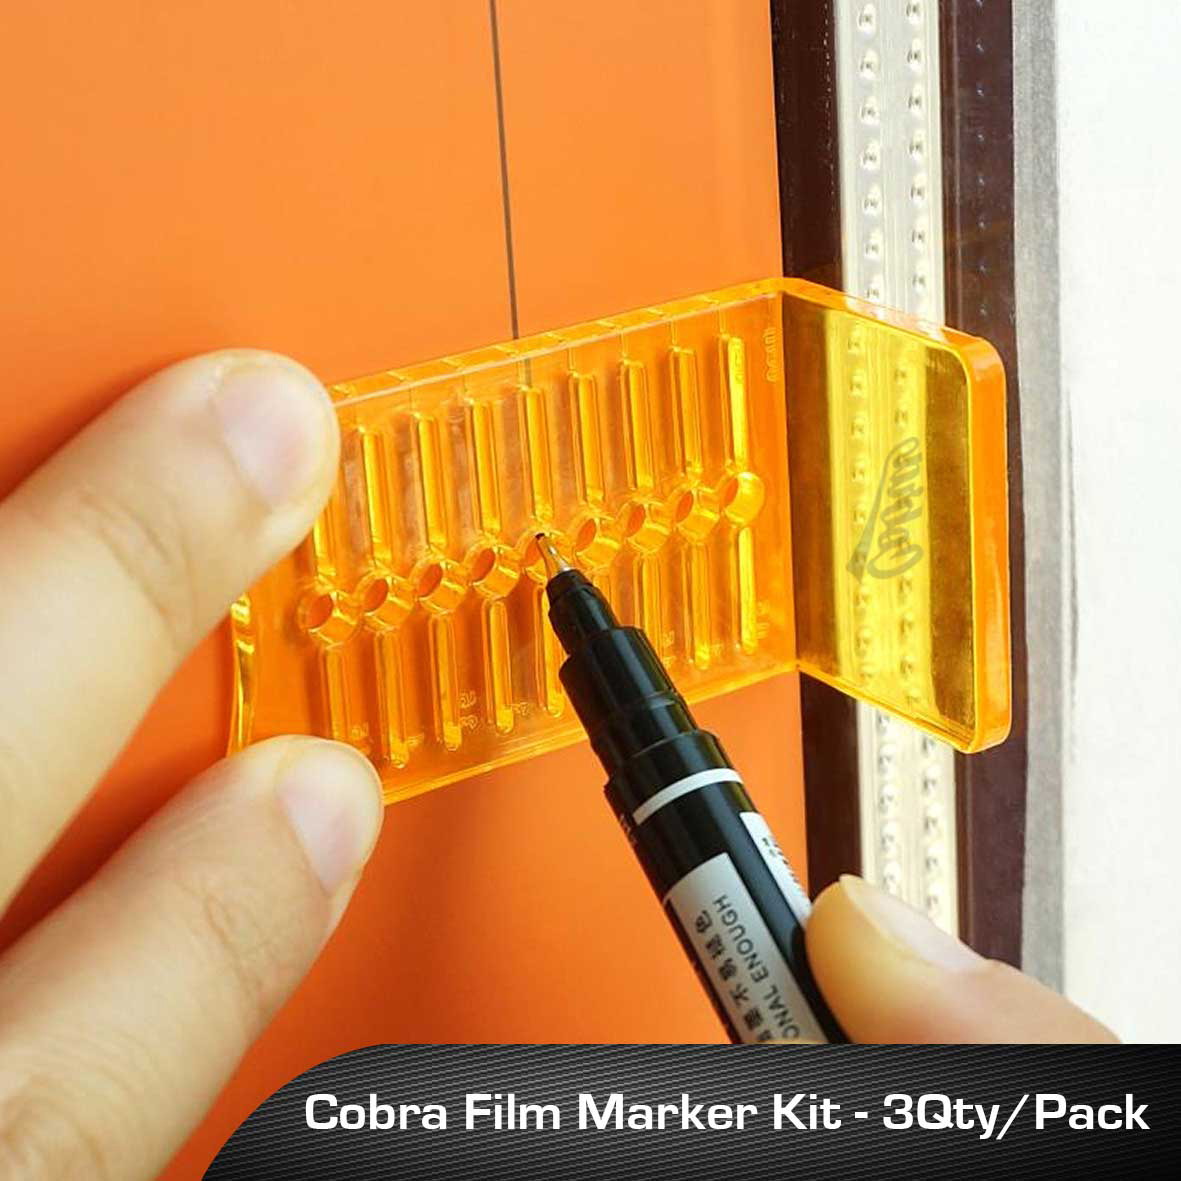 Cobra Film Marker Kit Online USA.